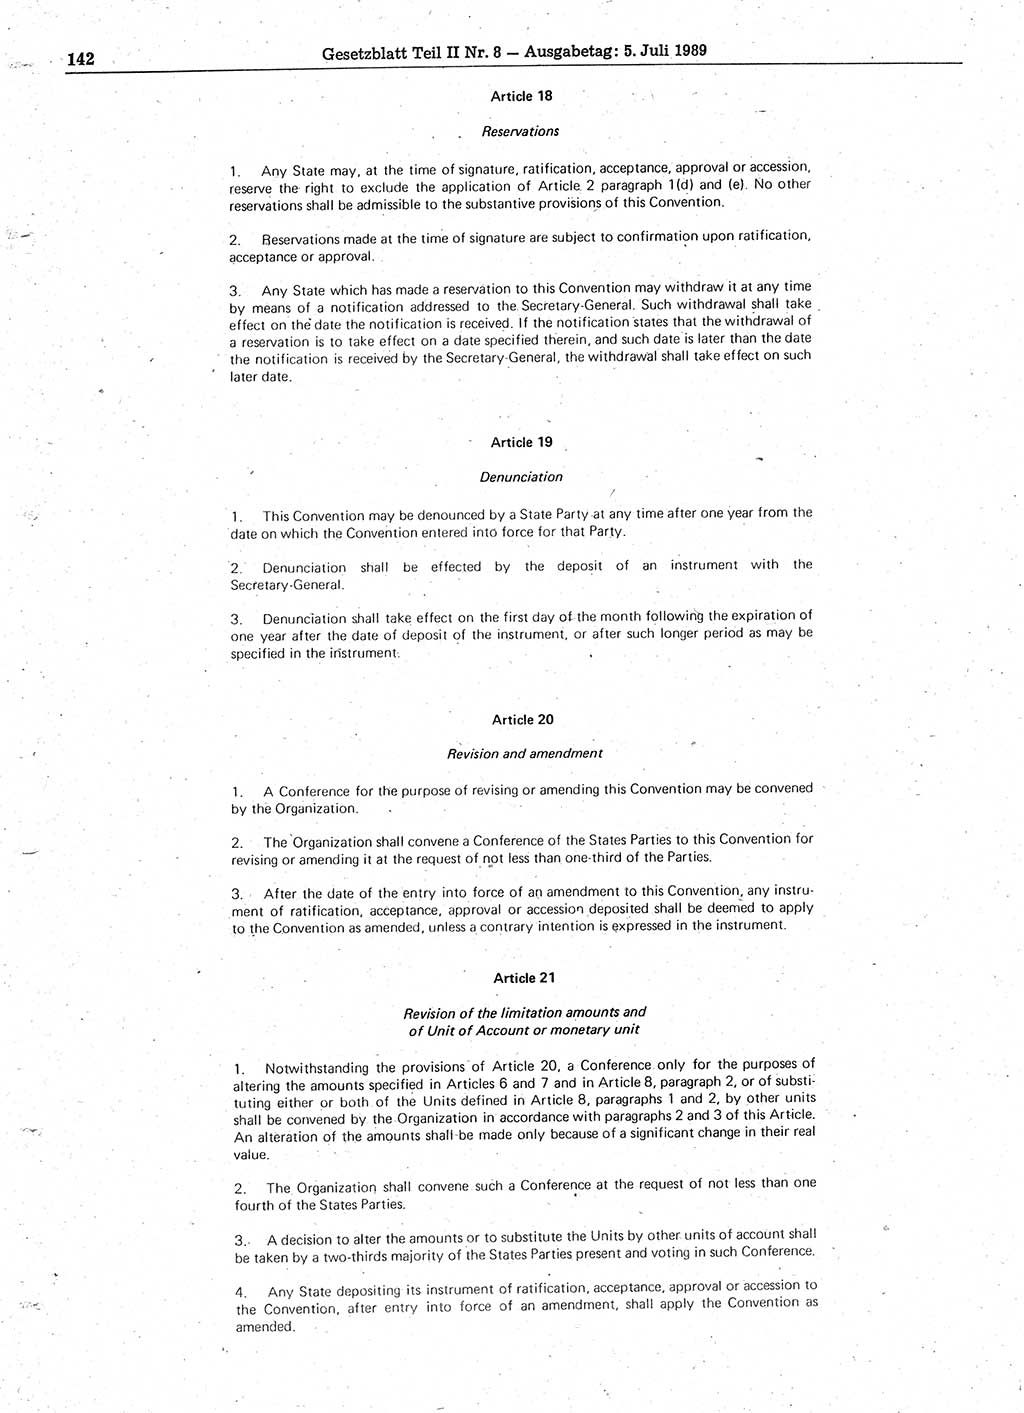 Gesetzblatt (GBl.) der Deutschen Demokratischen Republik (DDR) Teil ⅠⅠ 1989, Seite 142 (GBl. DDR ⅠⅠ 1989, S. 142)